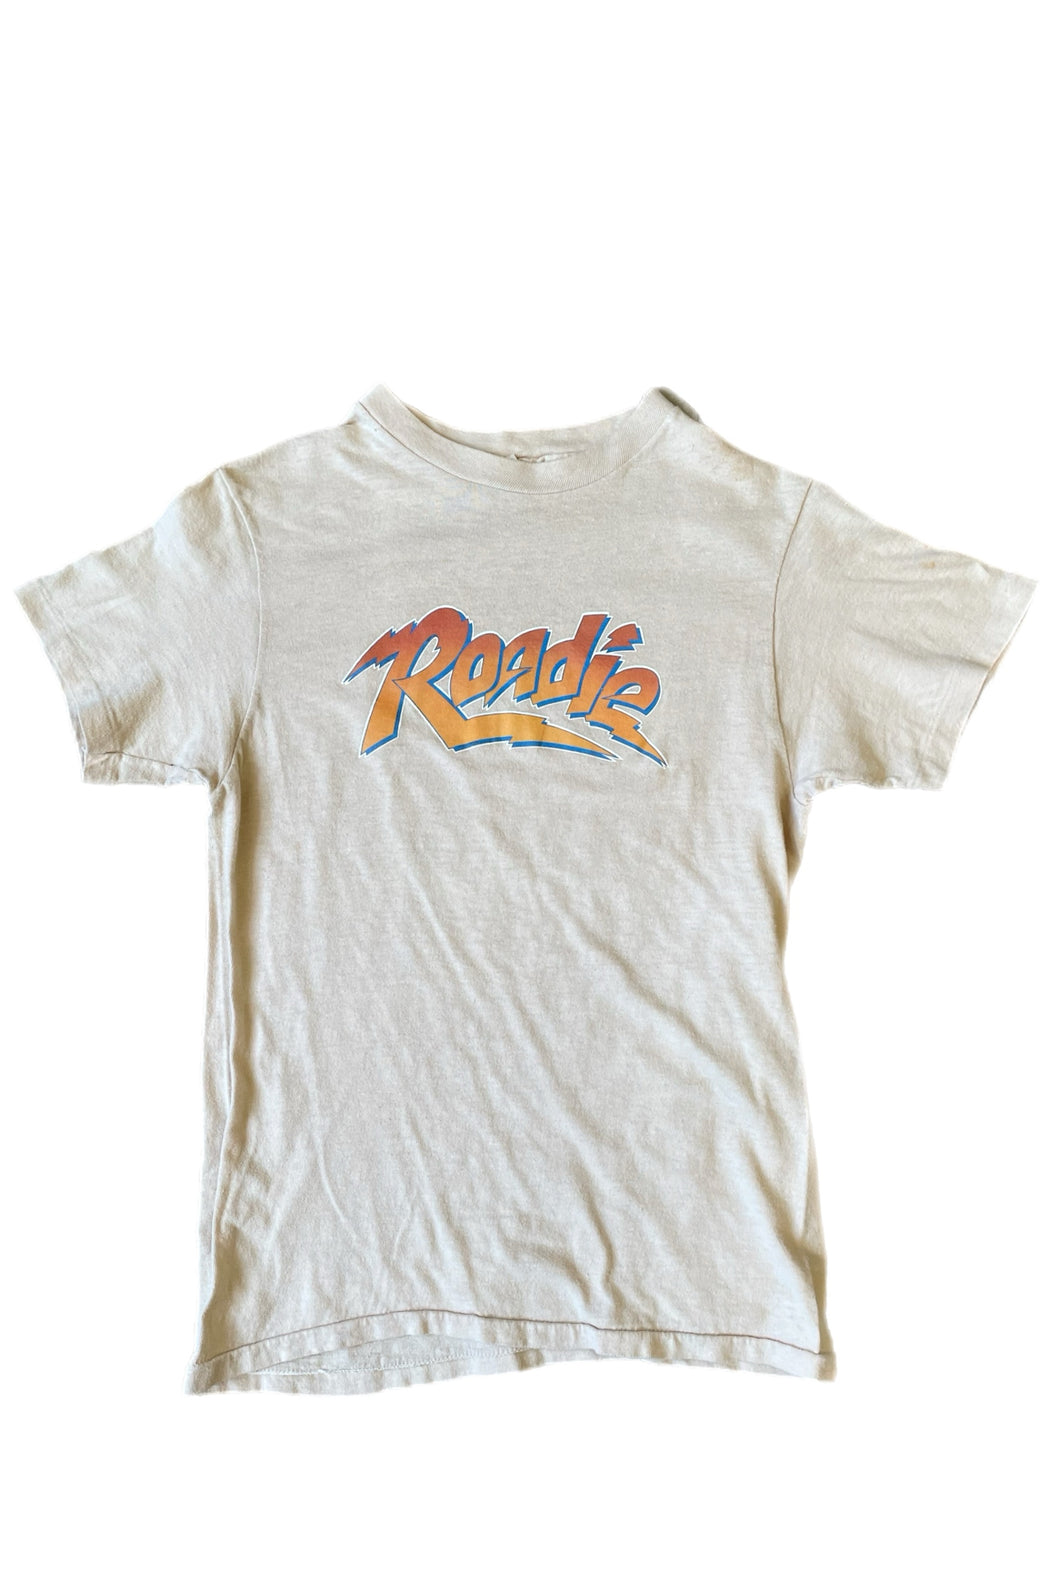 Vintage 1980 Roadie Movie T-Shirt